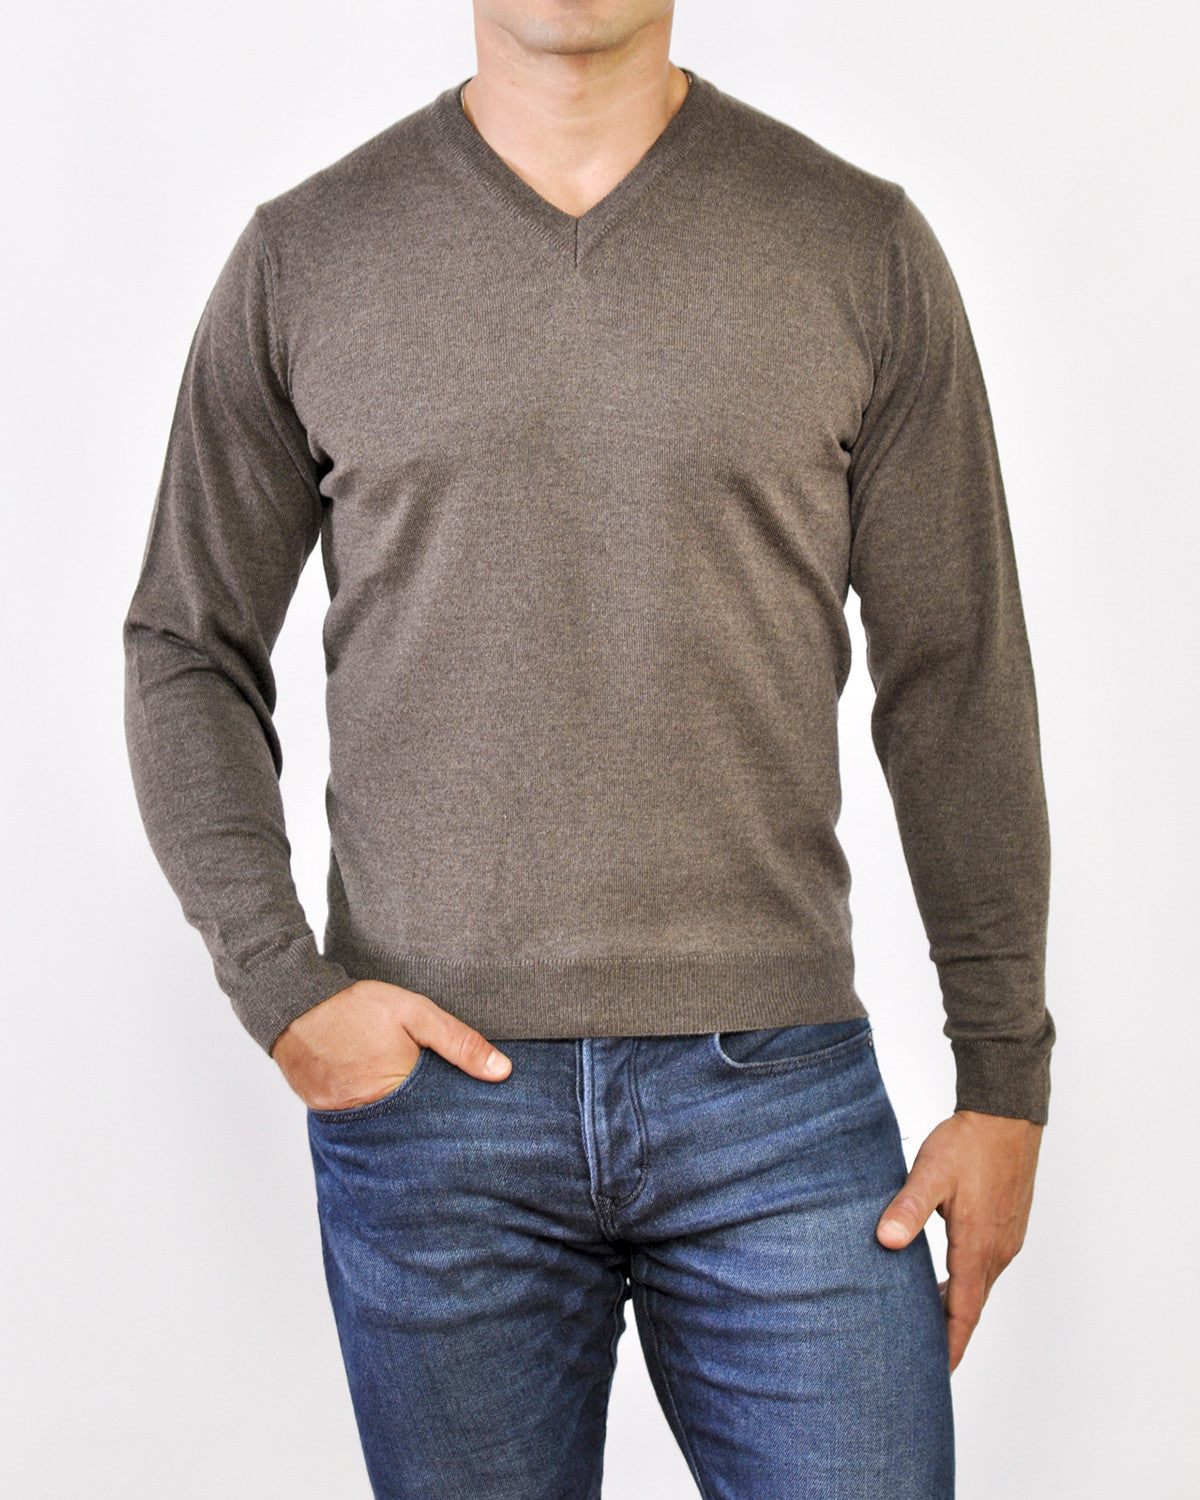 SAWYER | Driftwood | V-neck Sweater for Shorter Men 5' 9